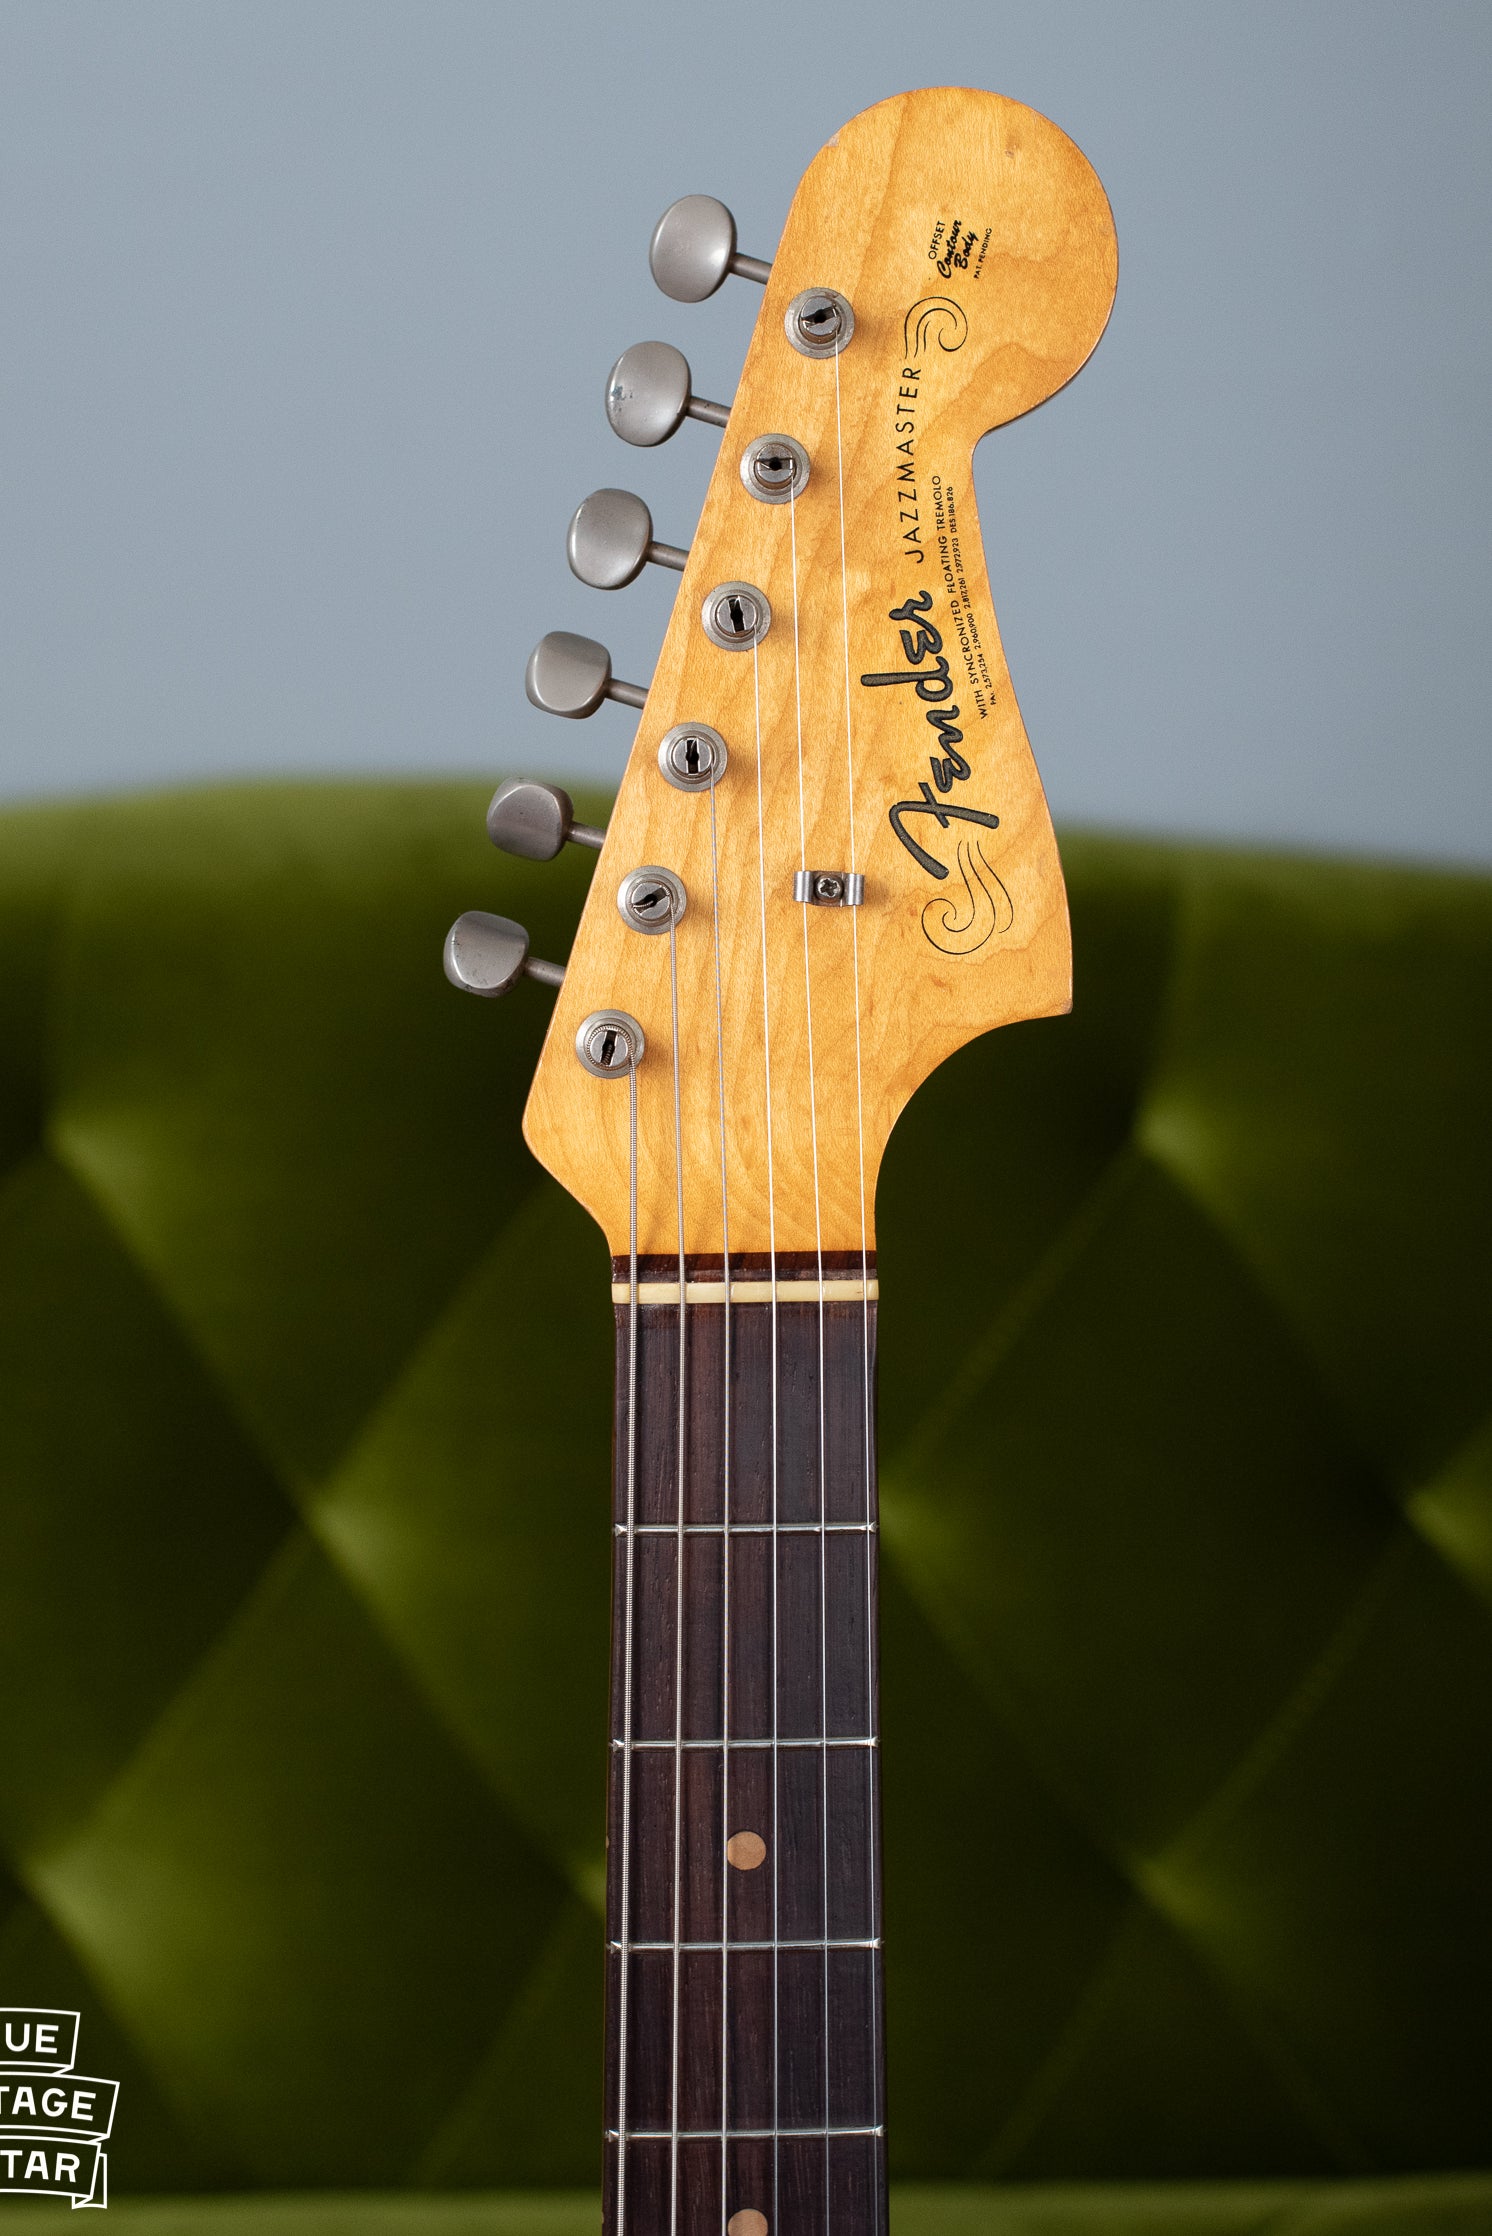 Fender Jazzmaster headstock 1963